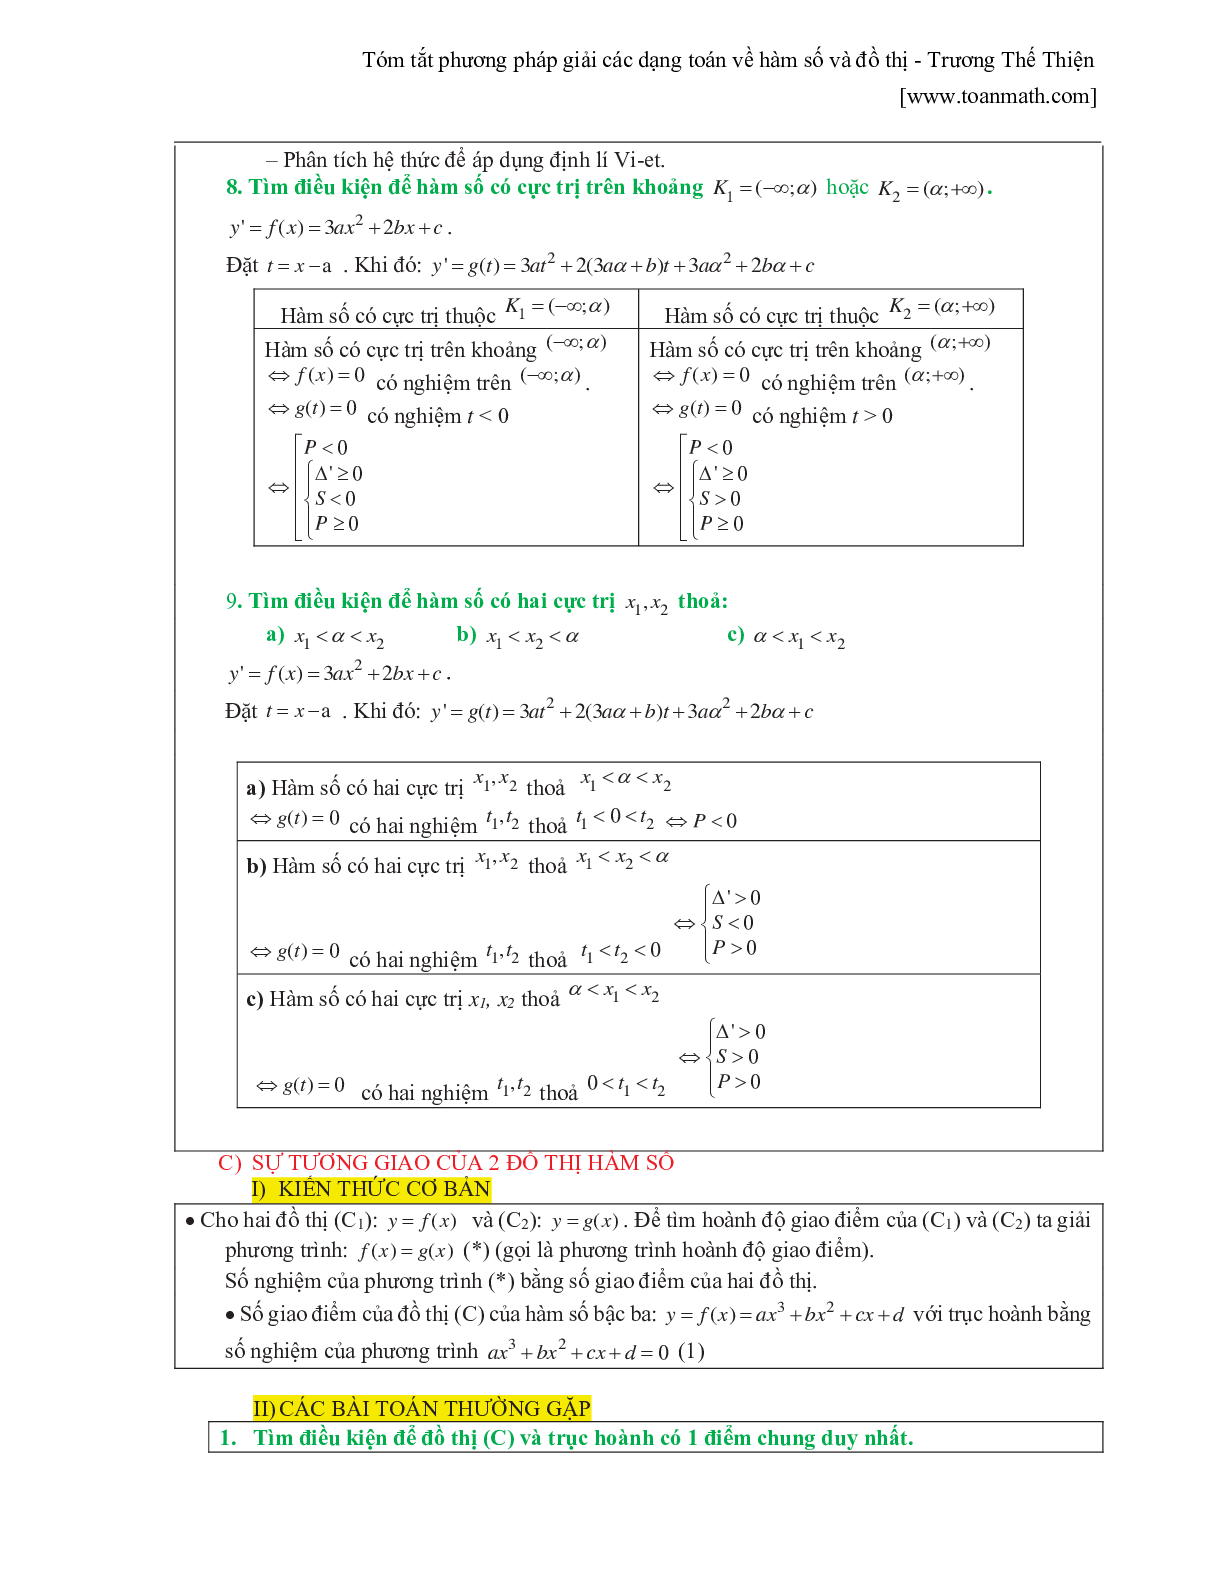 Tóm tắt phương pháp giải các dạng toán về hàm số và đồ thị (trang 5)